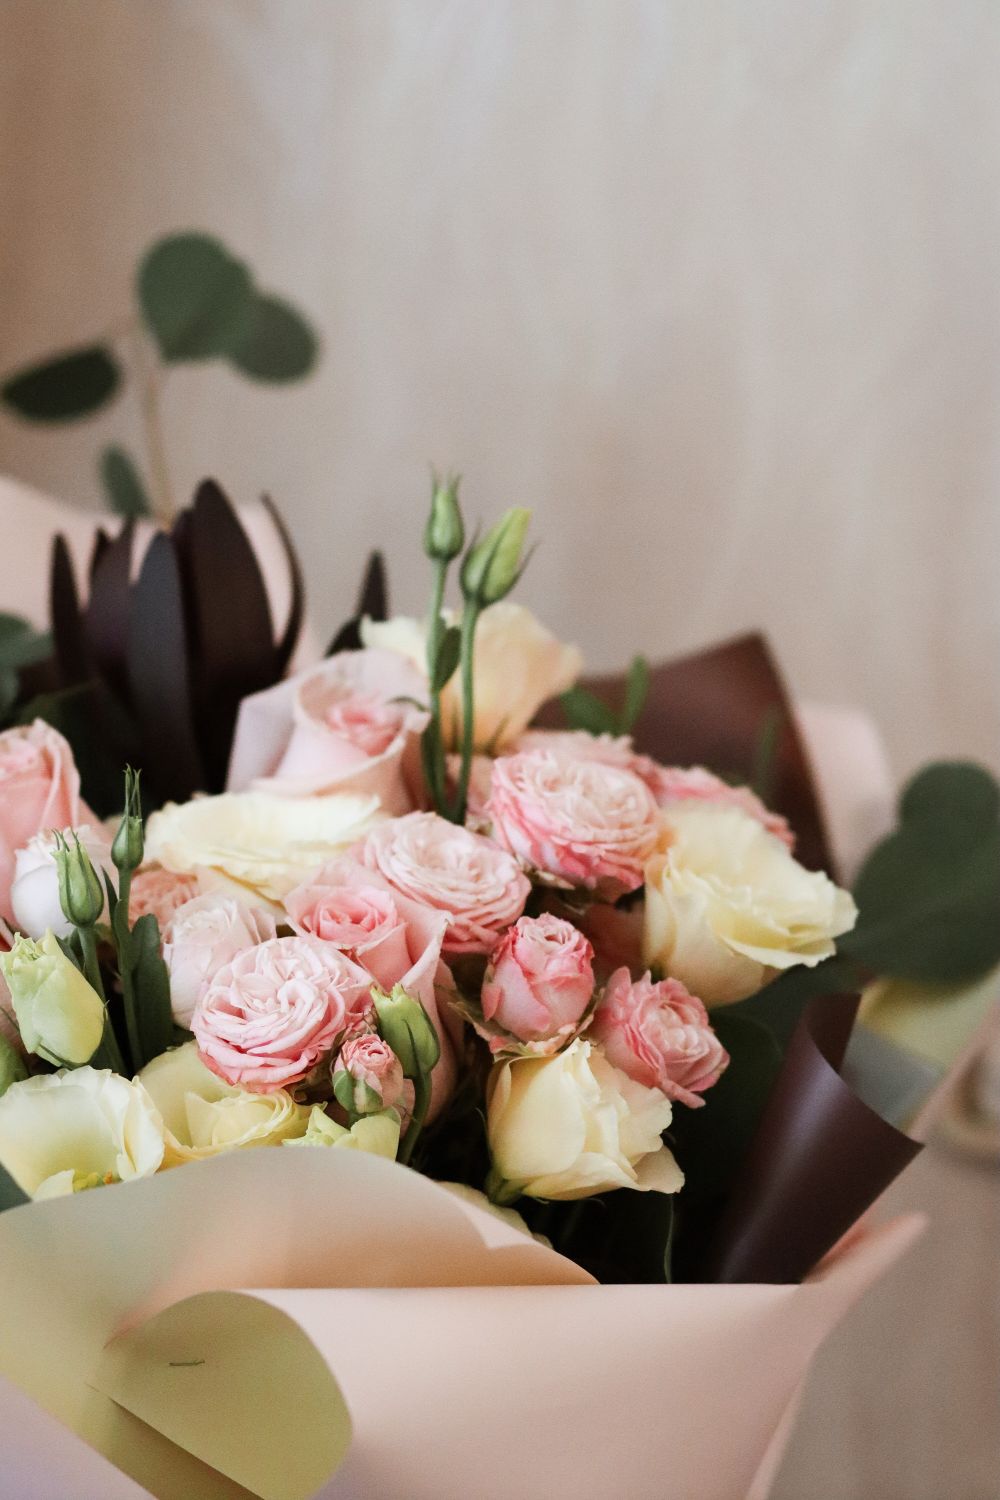 Blomleverans för dig som upplever romantisk oro i Stockholm